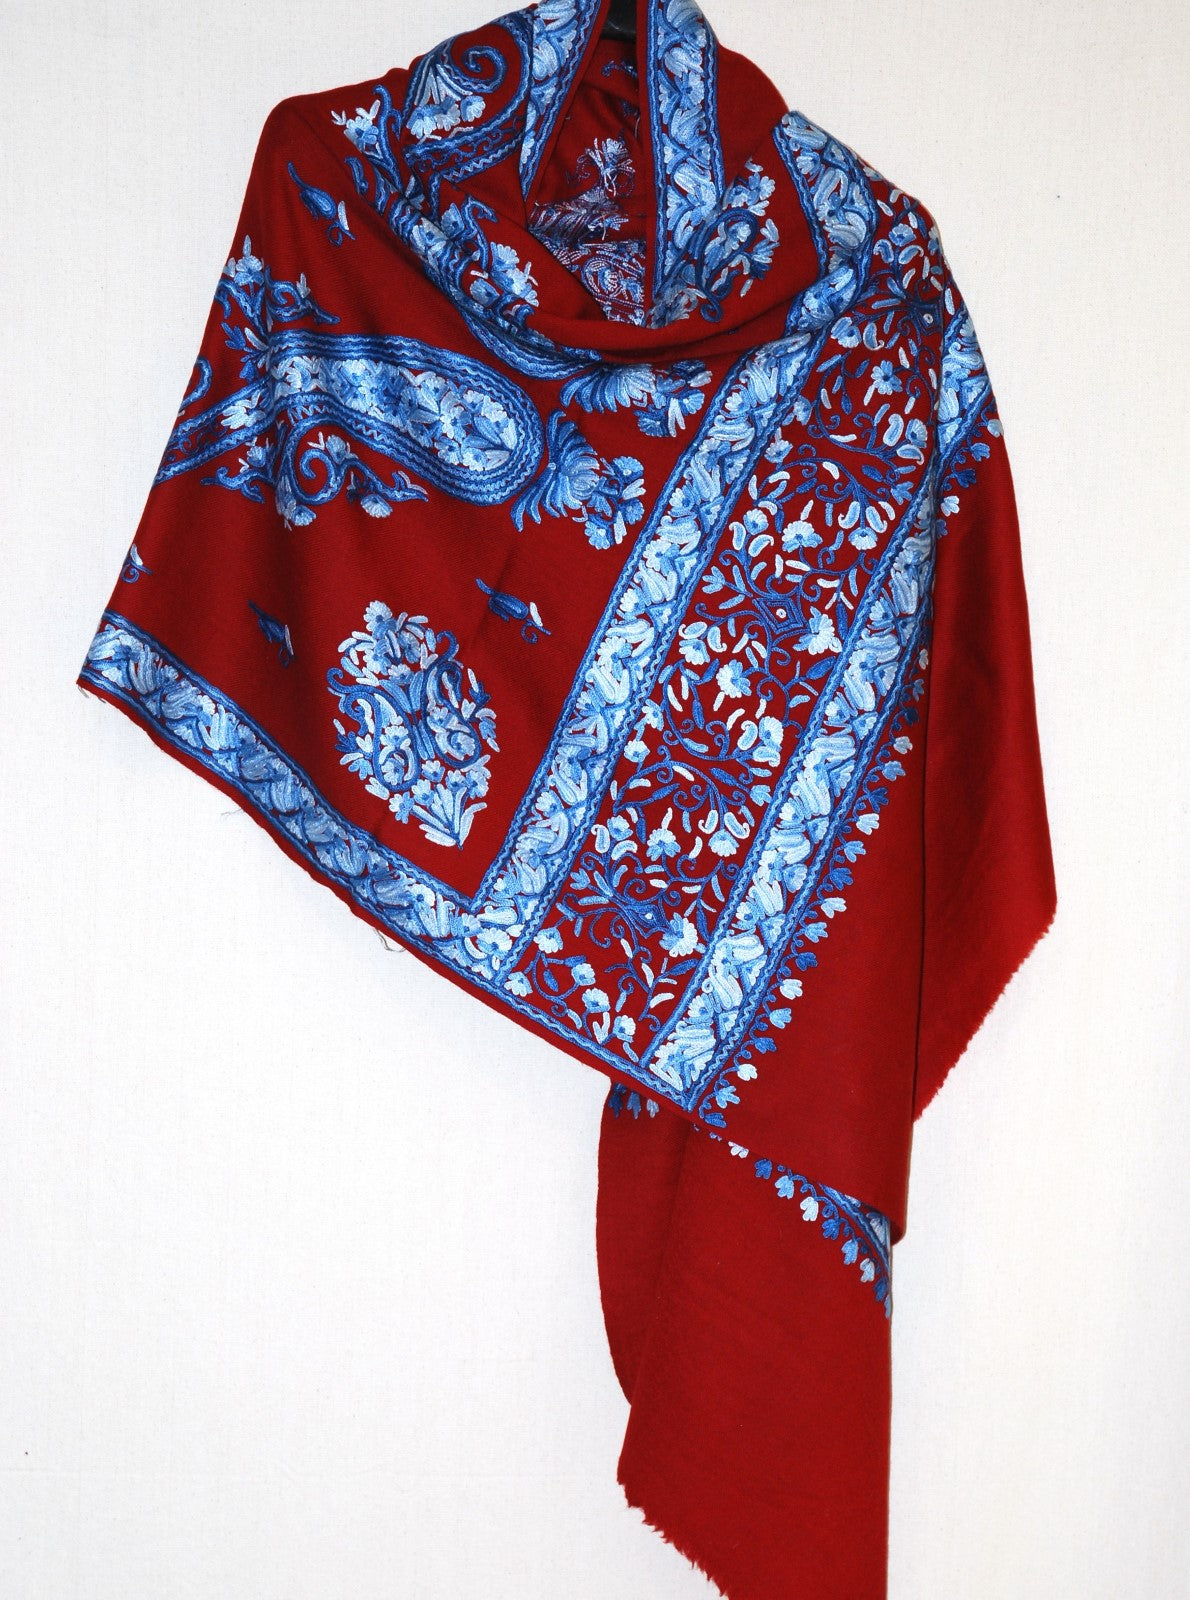 Kashmir Wool Shawl Wrap Throw Maroon, Blue Embroidery #WS-121